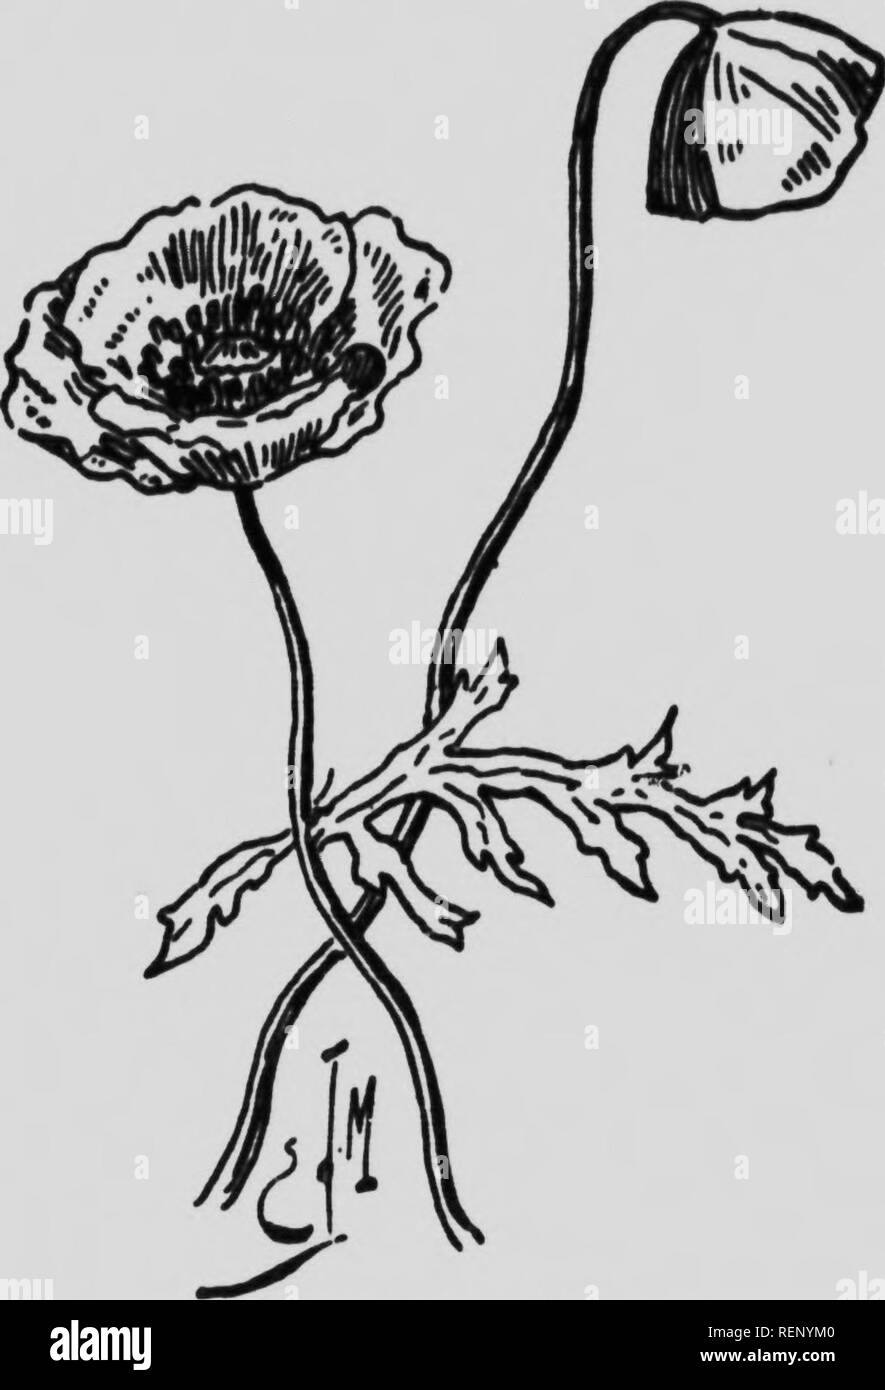 . Cent fleurs de mon herbier [microforme] : études sur le monde végétal à la portée de tous ; suivies d'un Calendrier de la flore de la province de Québec. Botany; Botanique. :^^:-^l^r^.uy&gt;.i. 1 IffT ïï n LE COÛUEUCOT. 1-1 FaniilU&quot; (U-s papavArac^^tw. — Pavot coquelicot, Papaver rhuax. - Annuelle. Tige de 1 ft 2 .pi«&lt;ls. FeuillM velu«fc Fétttle* «l'un rouge vif. Sne Iiiiteux. Juin-juillet.. Le coquelicot. Le coquelicot est une des principales espèces du genre type de la famille des papavéracées: le pavot. Vous nous objecterez peut-»jtre que cette plante ne. Please note that these im Stock Photo